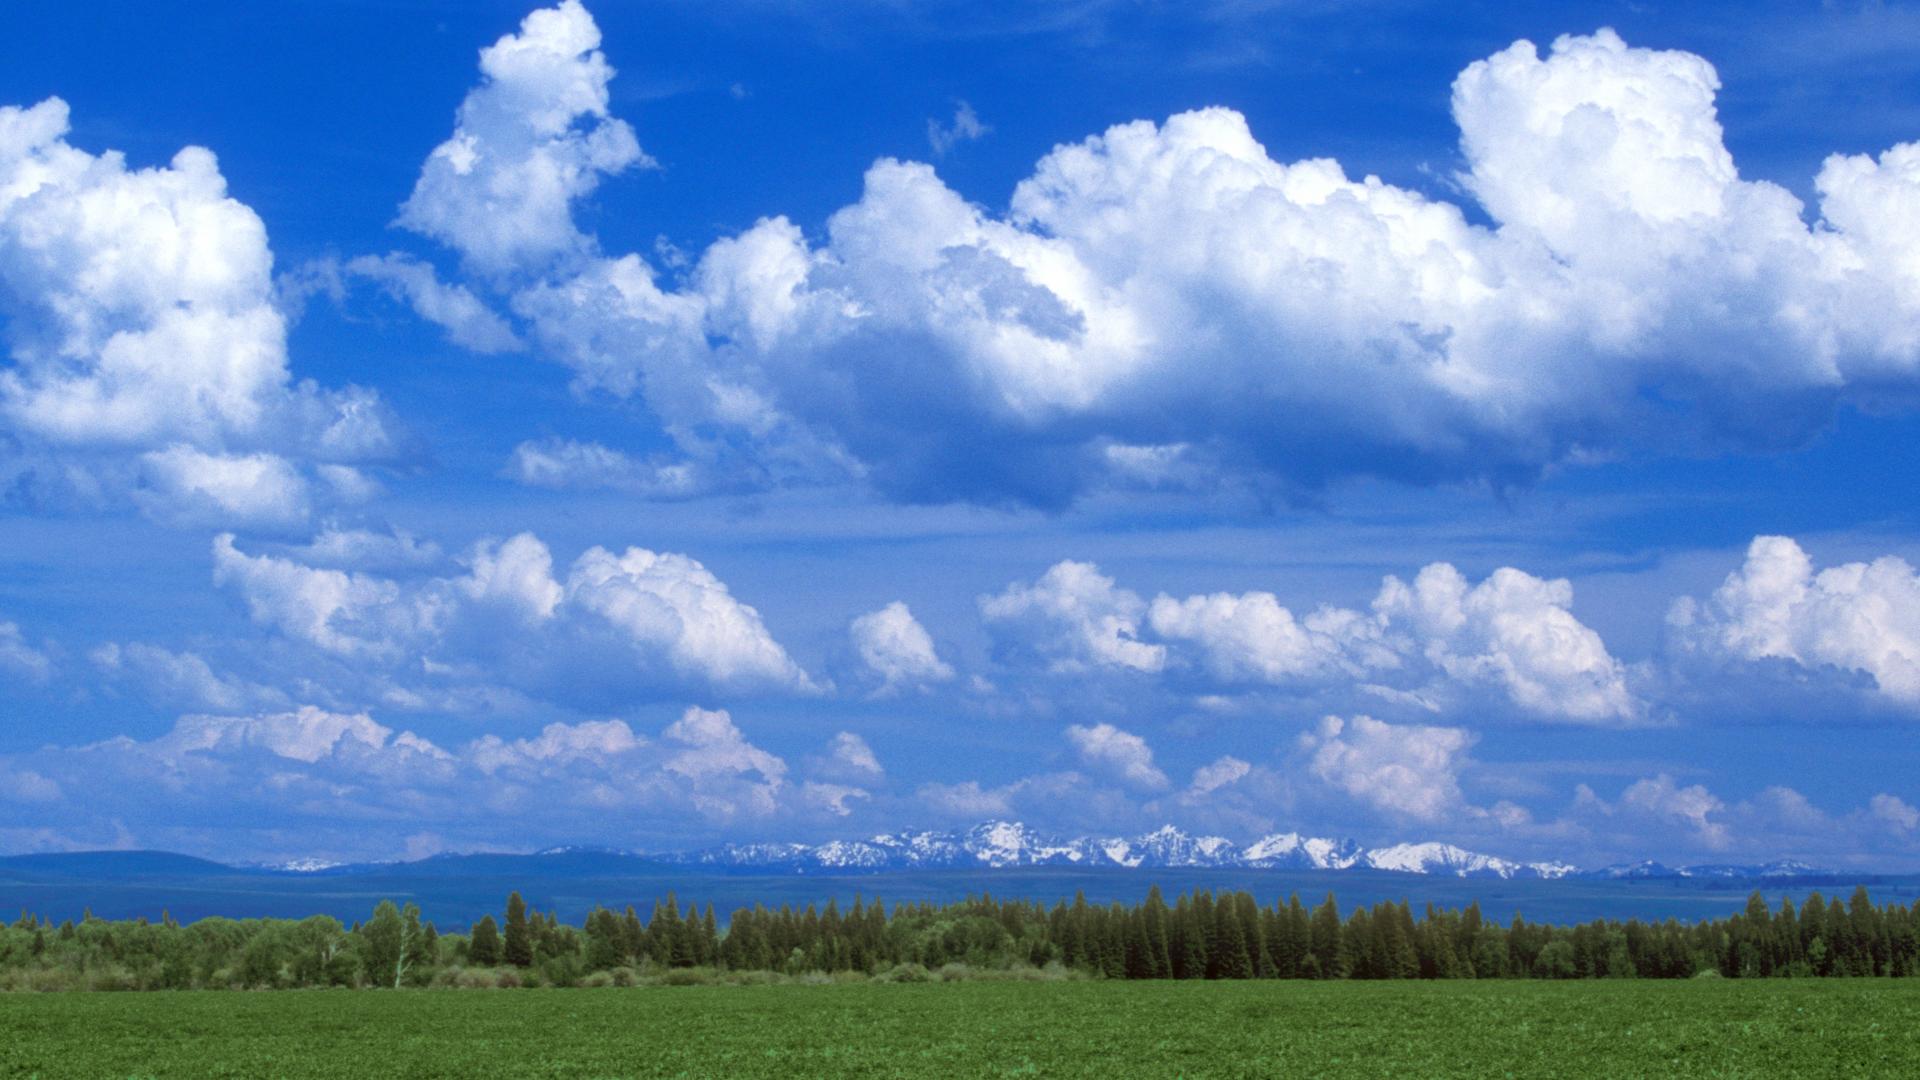 Núi Oregon là một trong những địa danh nổi tiếng nhất của Mỹ. Với những lớp mây trên đỉnh núi và khung cảnh thiên nhiên tuyệt đẹp, hình nền núi Oregon sẽ mang lại cho bạn cảm giác đắm mình trong thiên nhiên hoang sơ của nơi đây. Hãy truy cập ngay vào bộ sưu tập desktop backgrounds Oregon có sẵn để tìm kiếm những bức hình nền đẹp nhất.